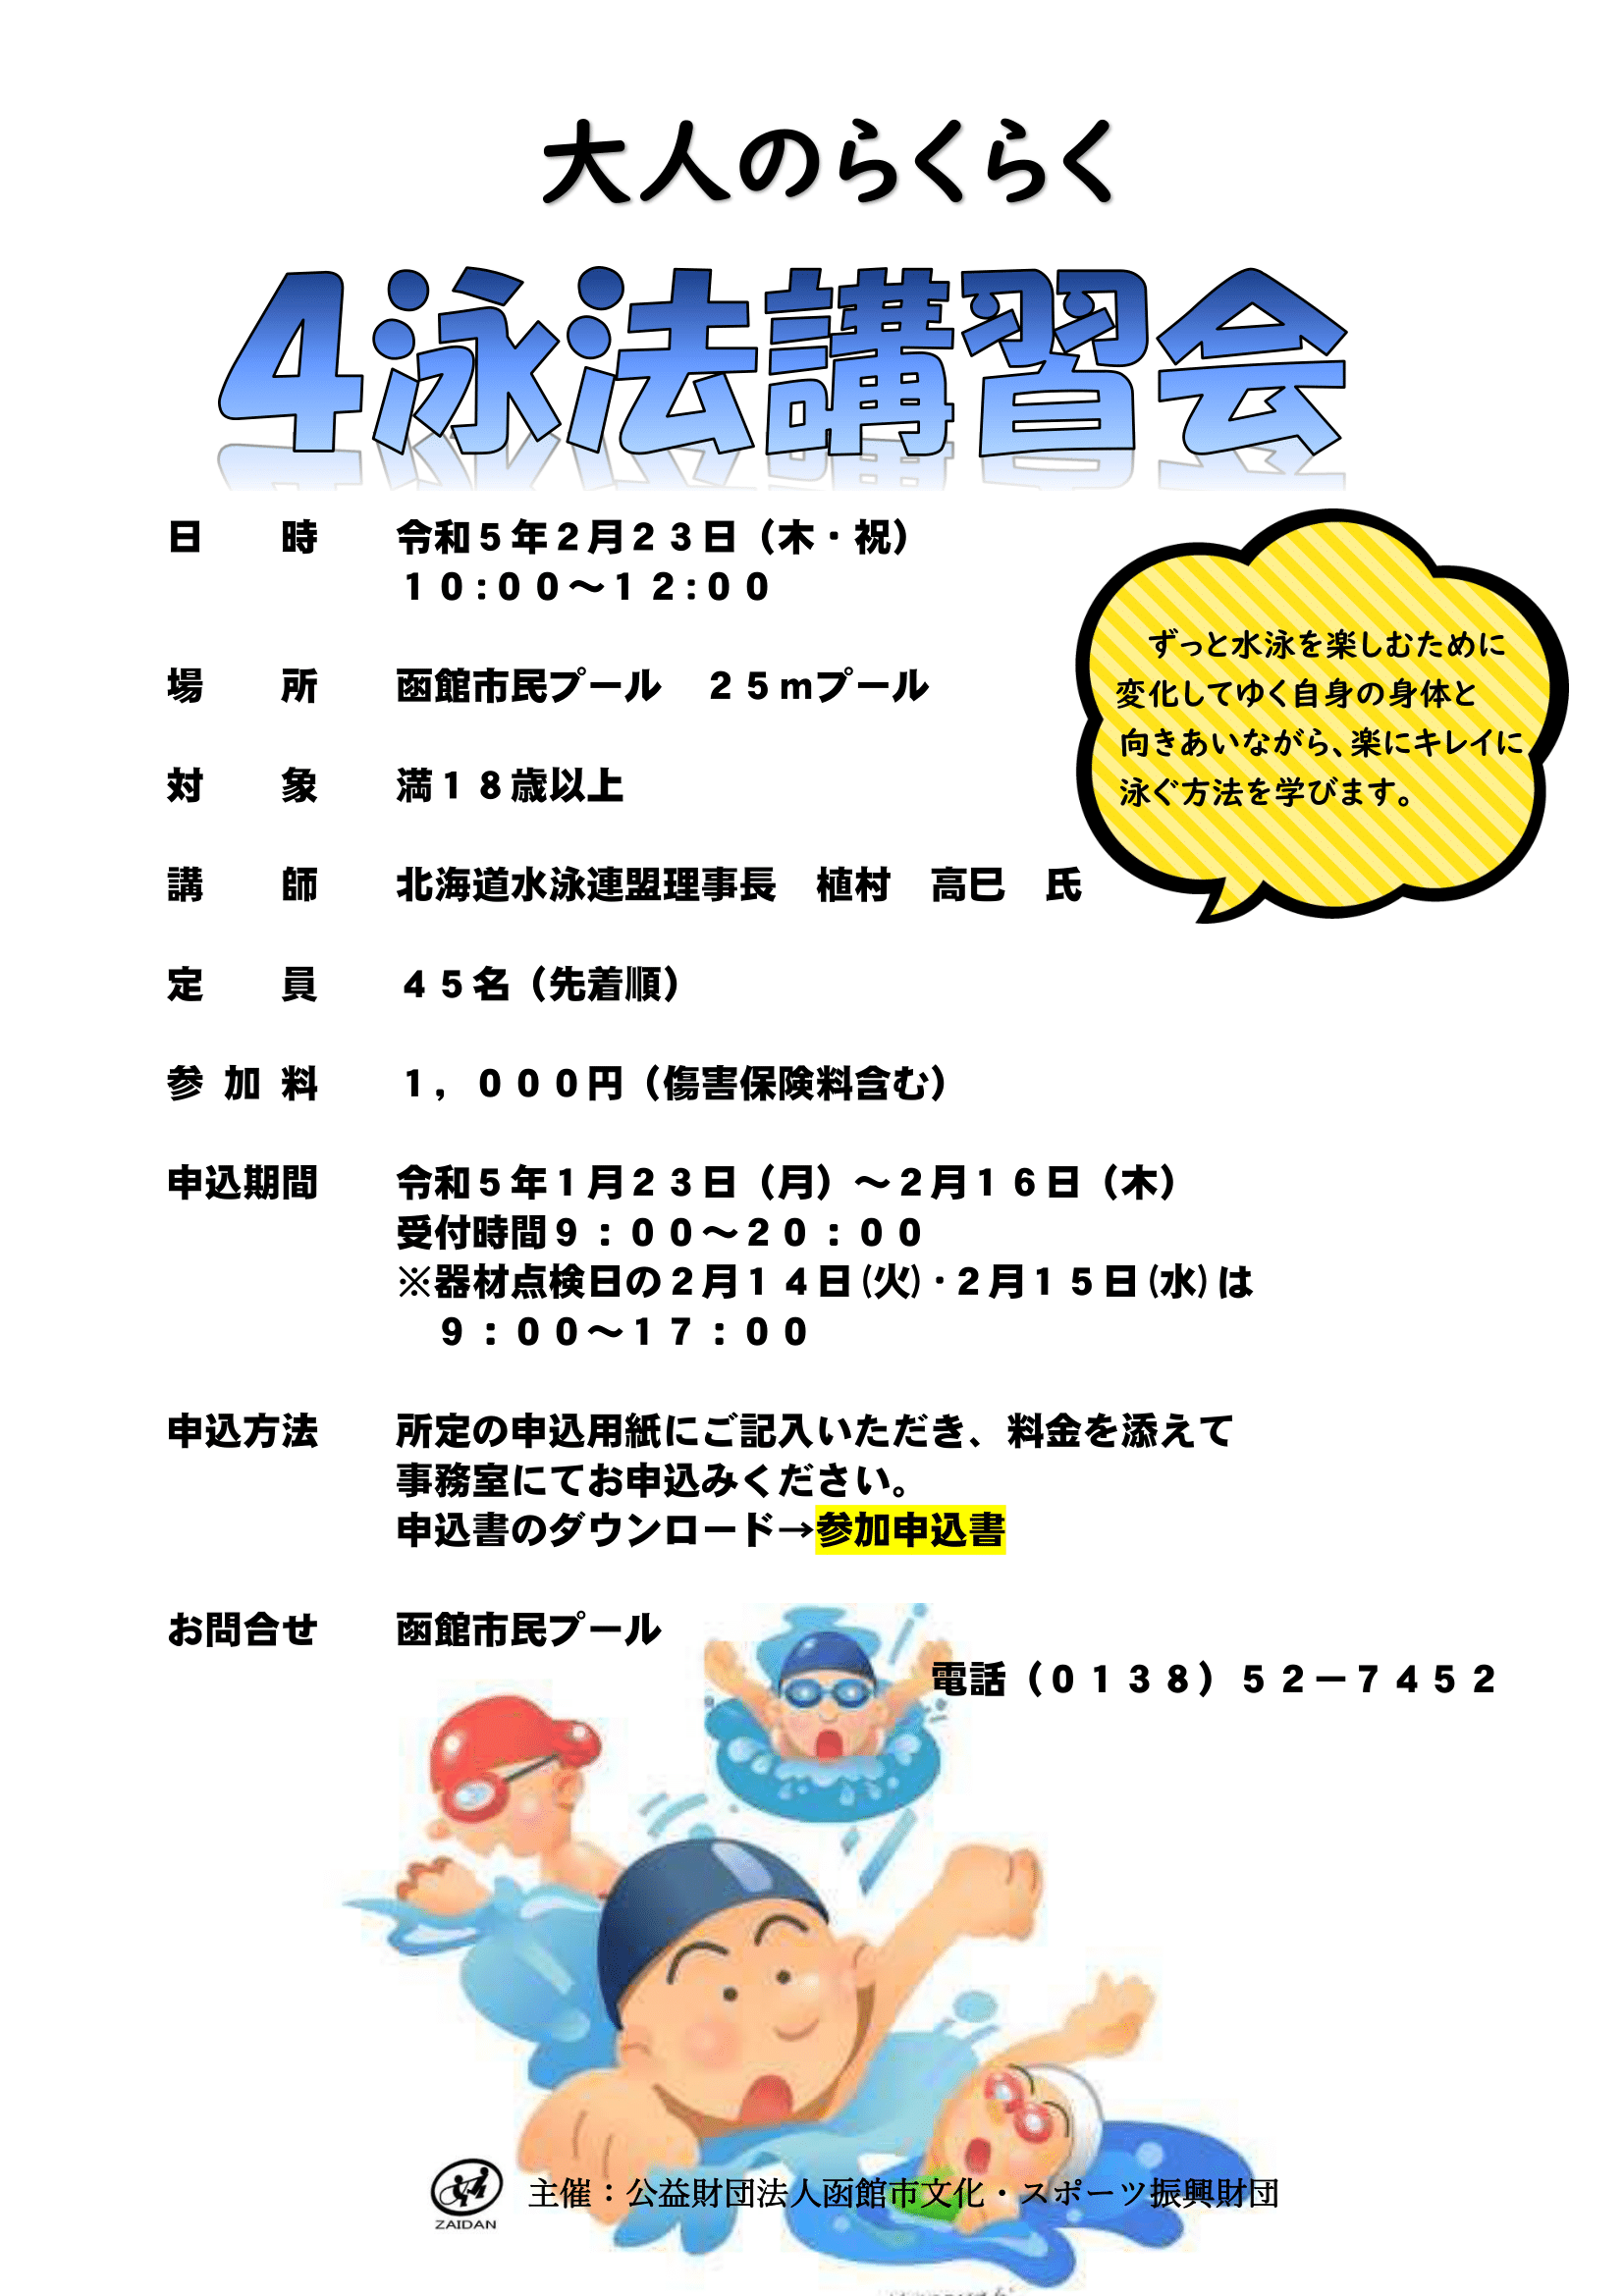 函館市文化・スポーツ振興財団